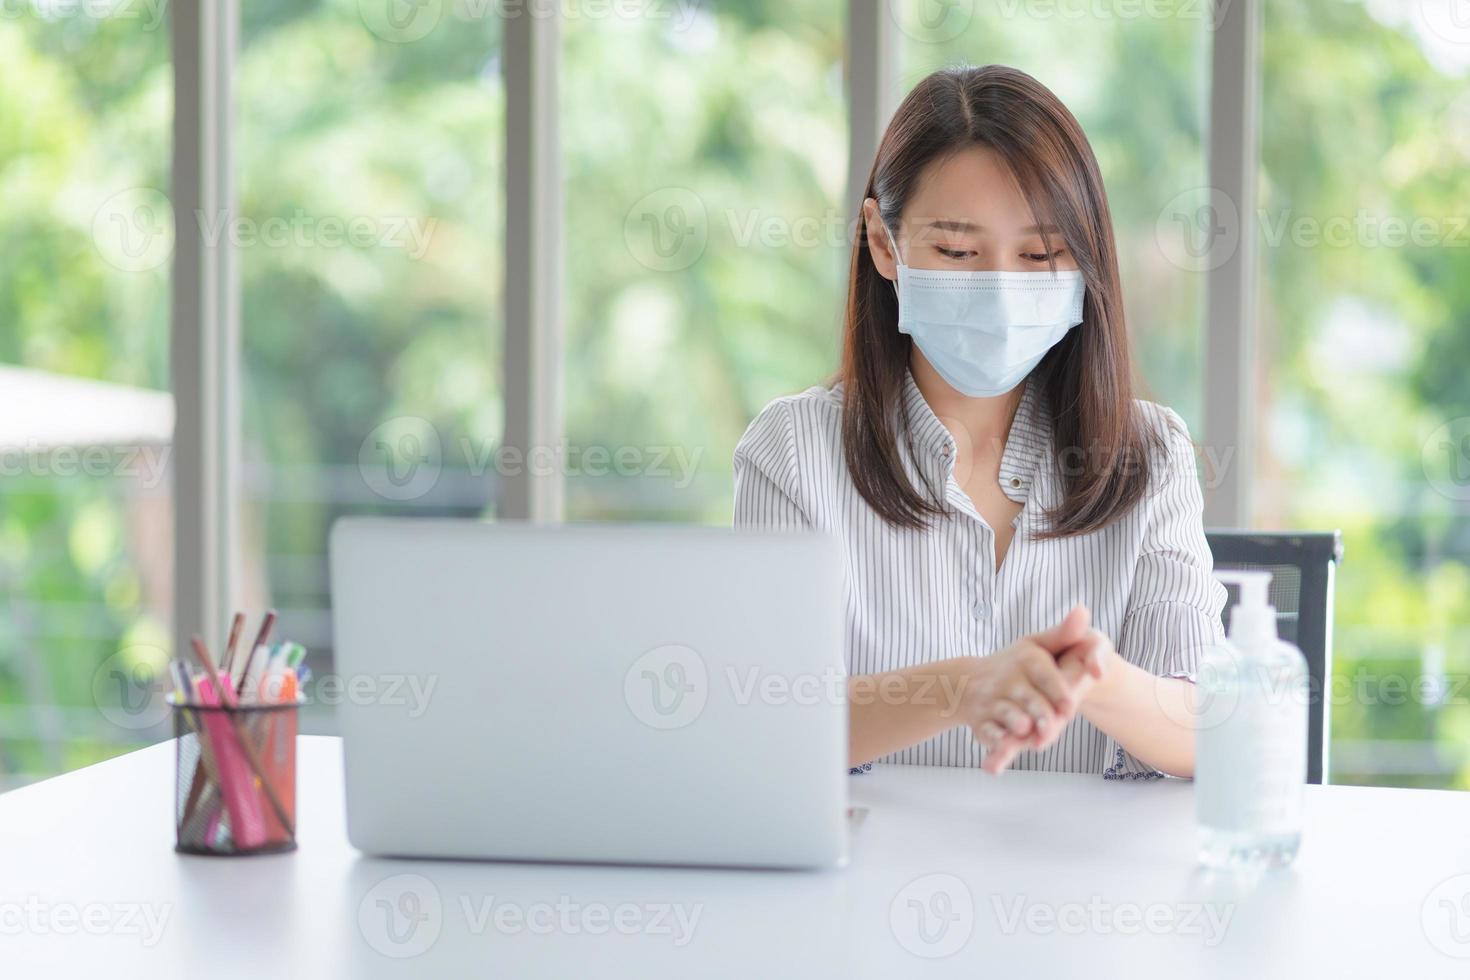 Geschäftsfrau, die Maske trägt und persönliches Desinfektionsmittel verwendet, um ihre Hand im Büro zu reinigen, um die Hygiene zu wahren. Präventiv während der Epidemie durch Coronavirus oder Covid19. foto